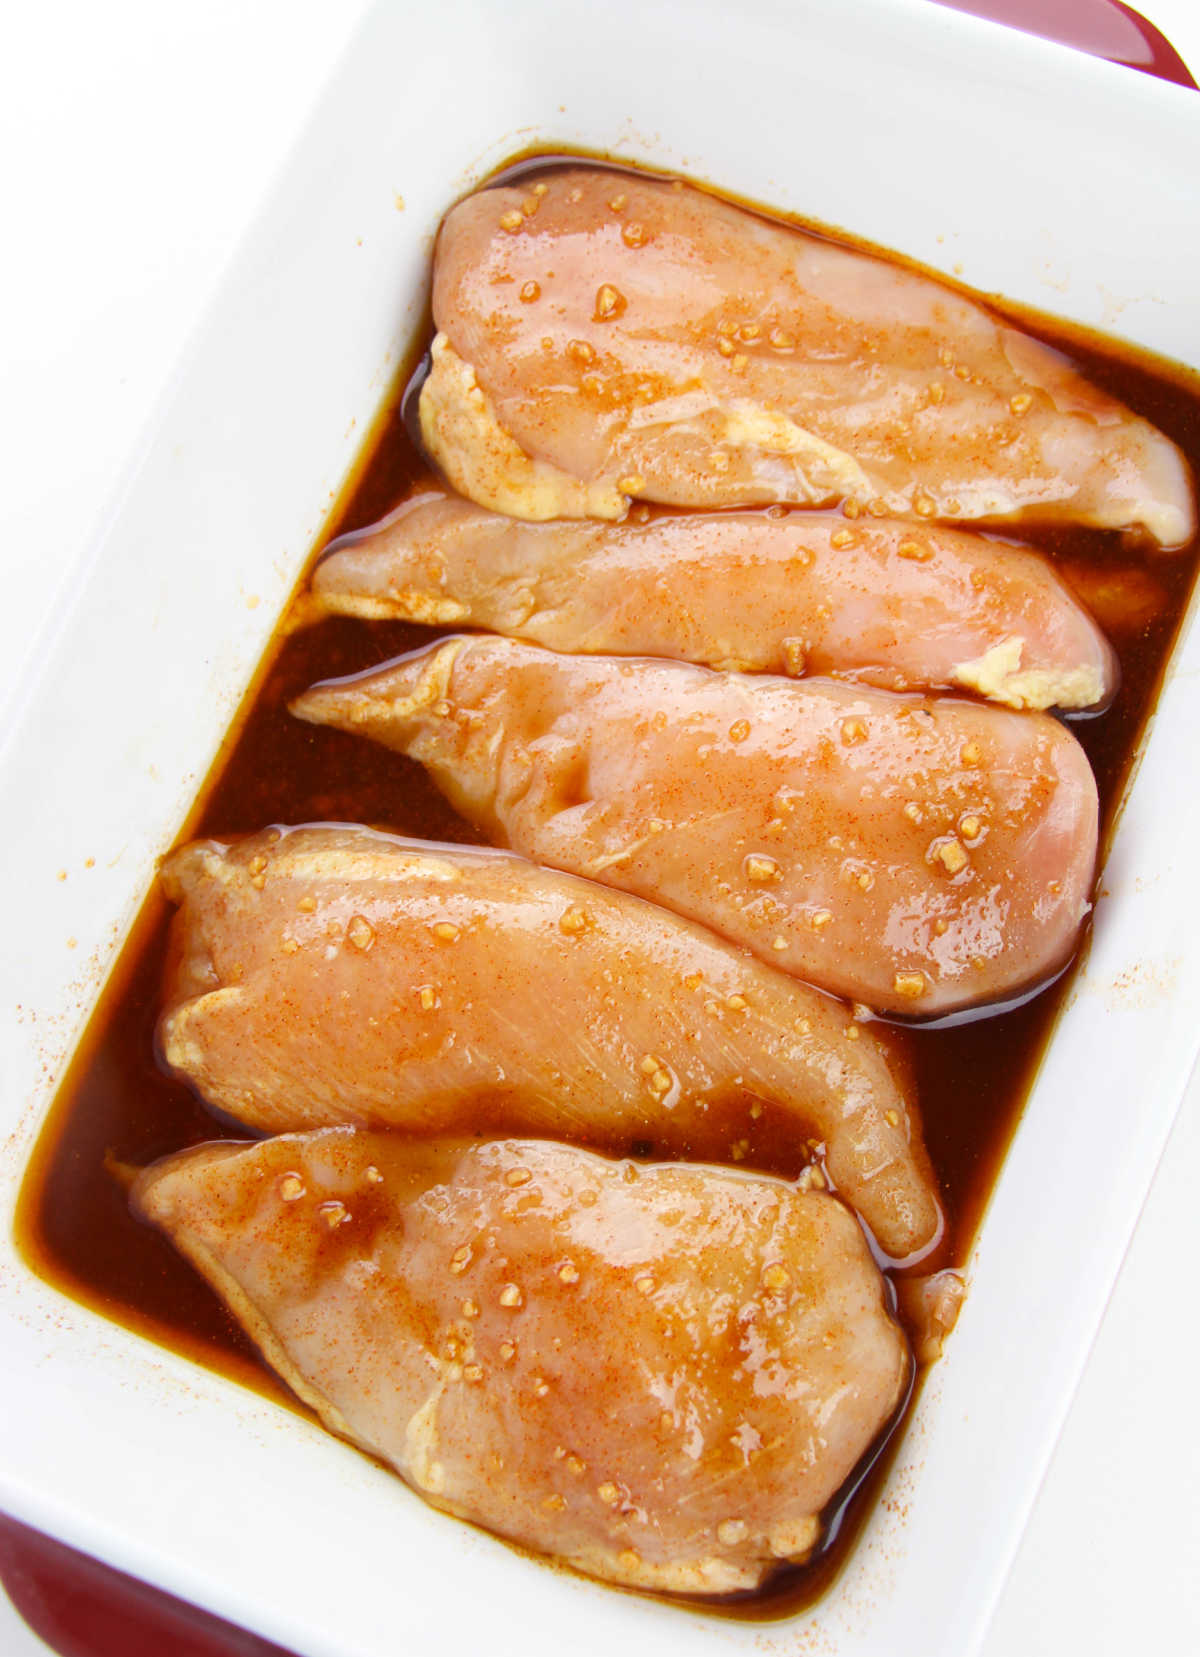 Chicken soaking in marinade.